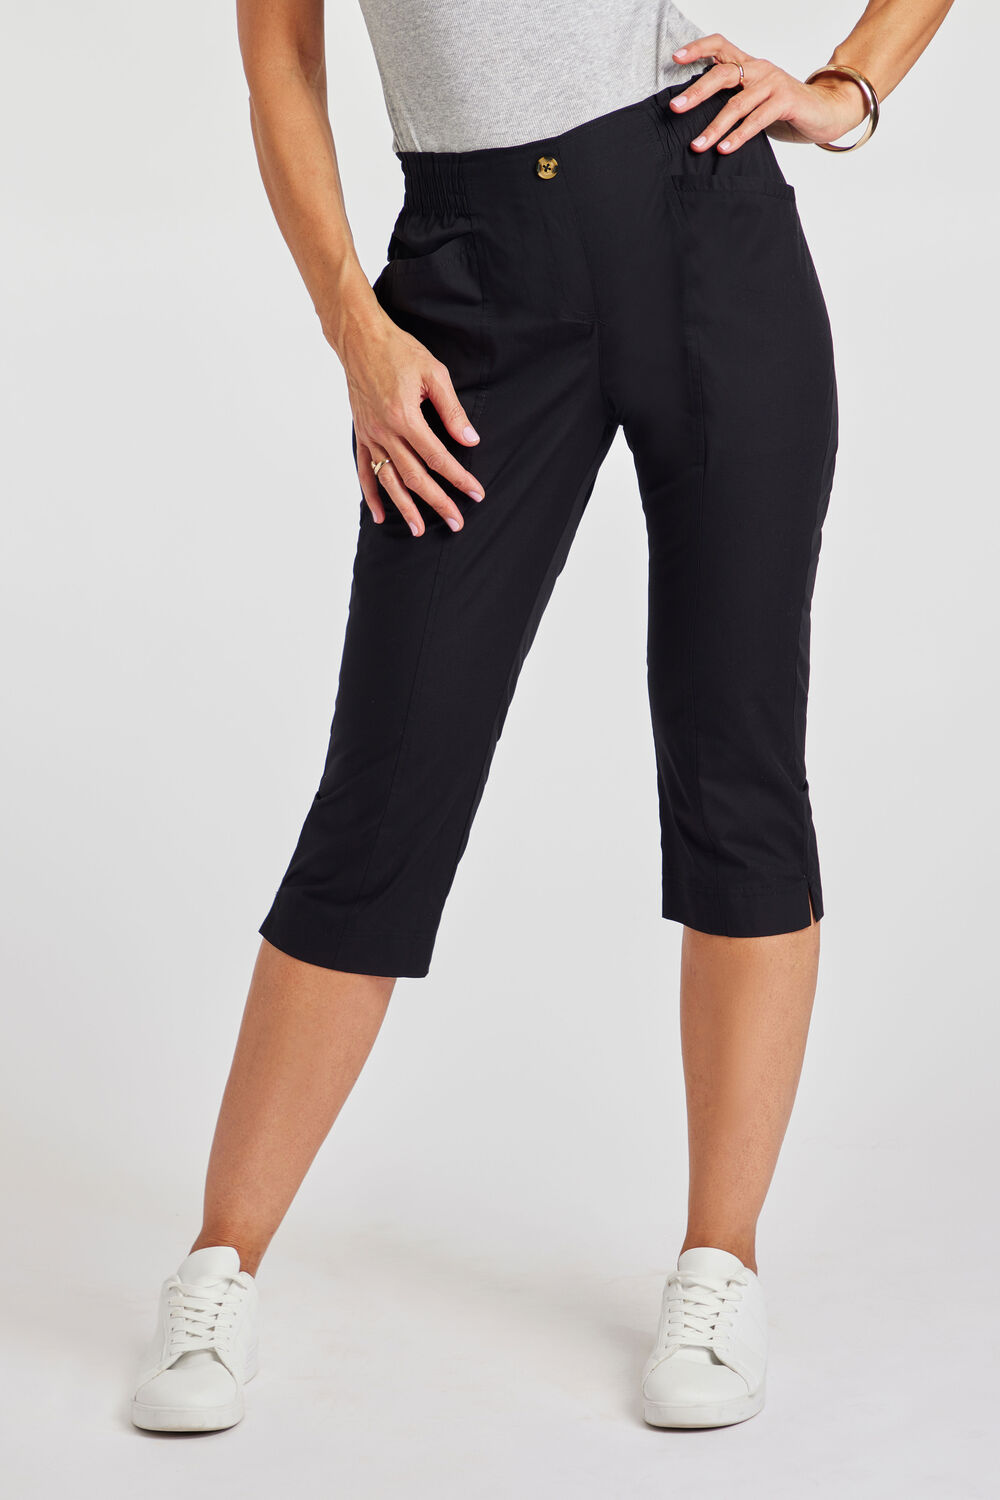 Bonmarche Ladies Black Essential Elastic Back Crop Trousers, Size: 14